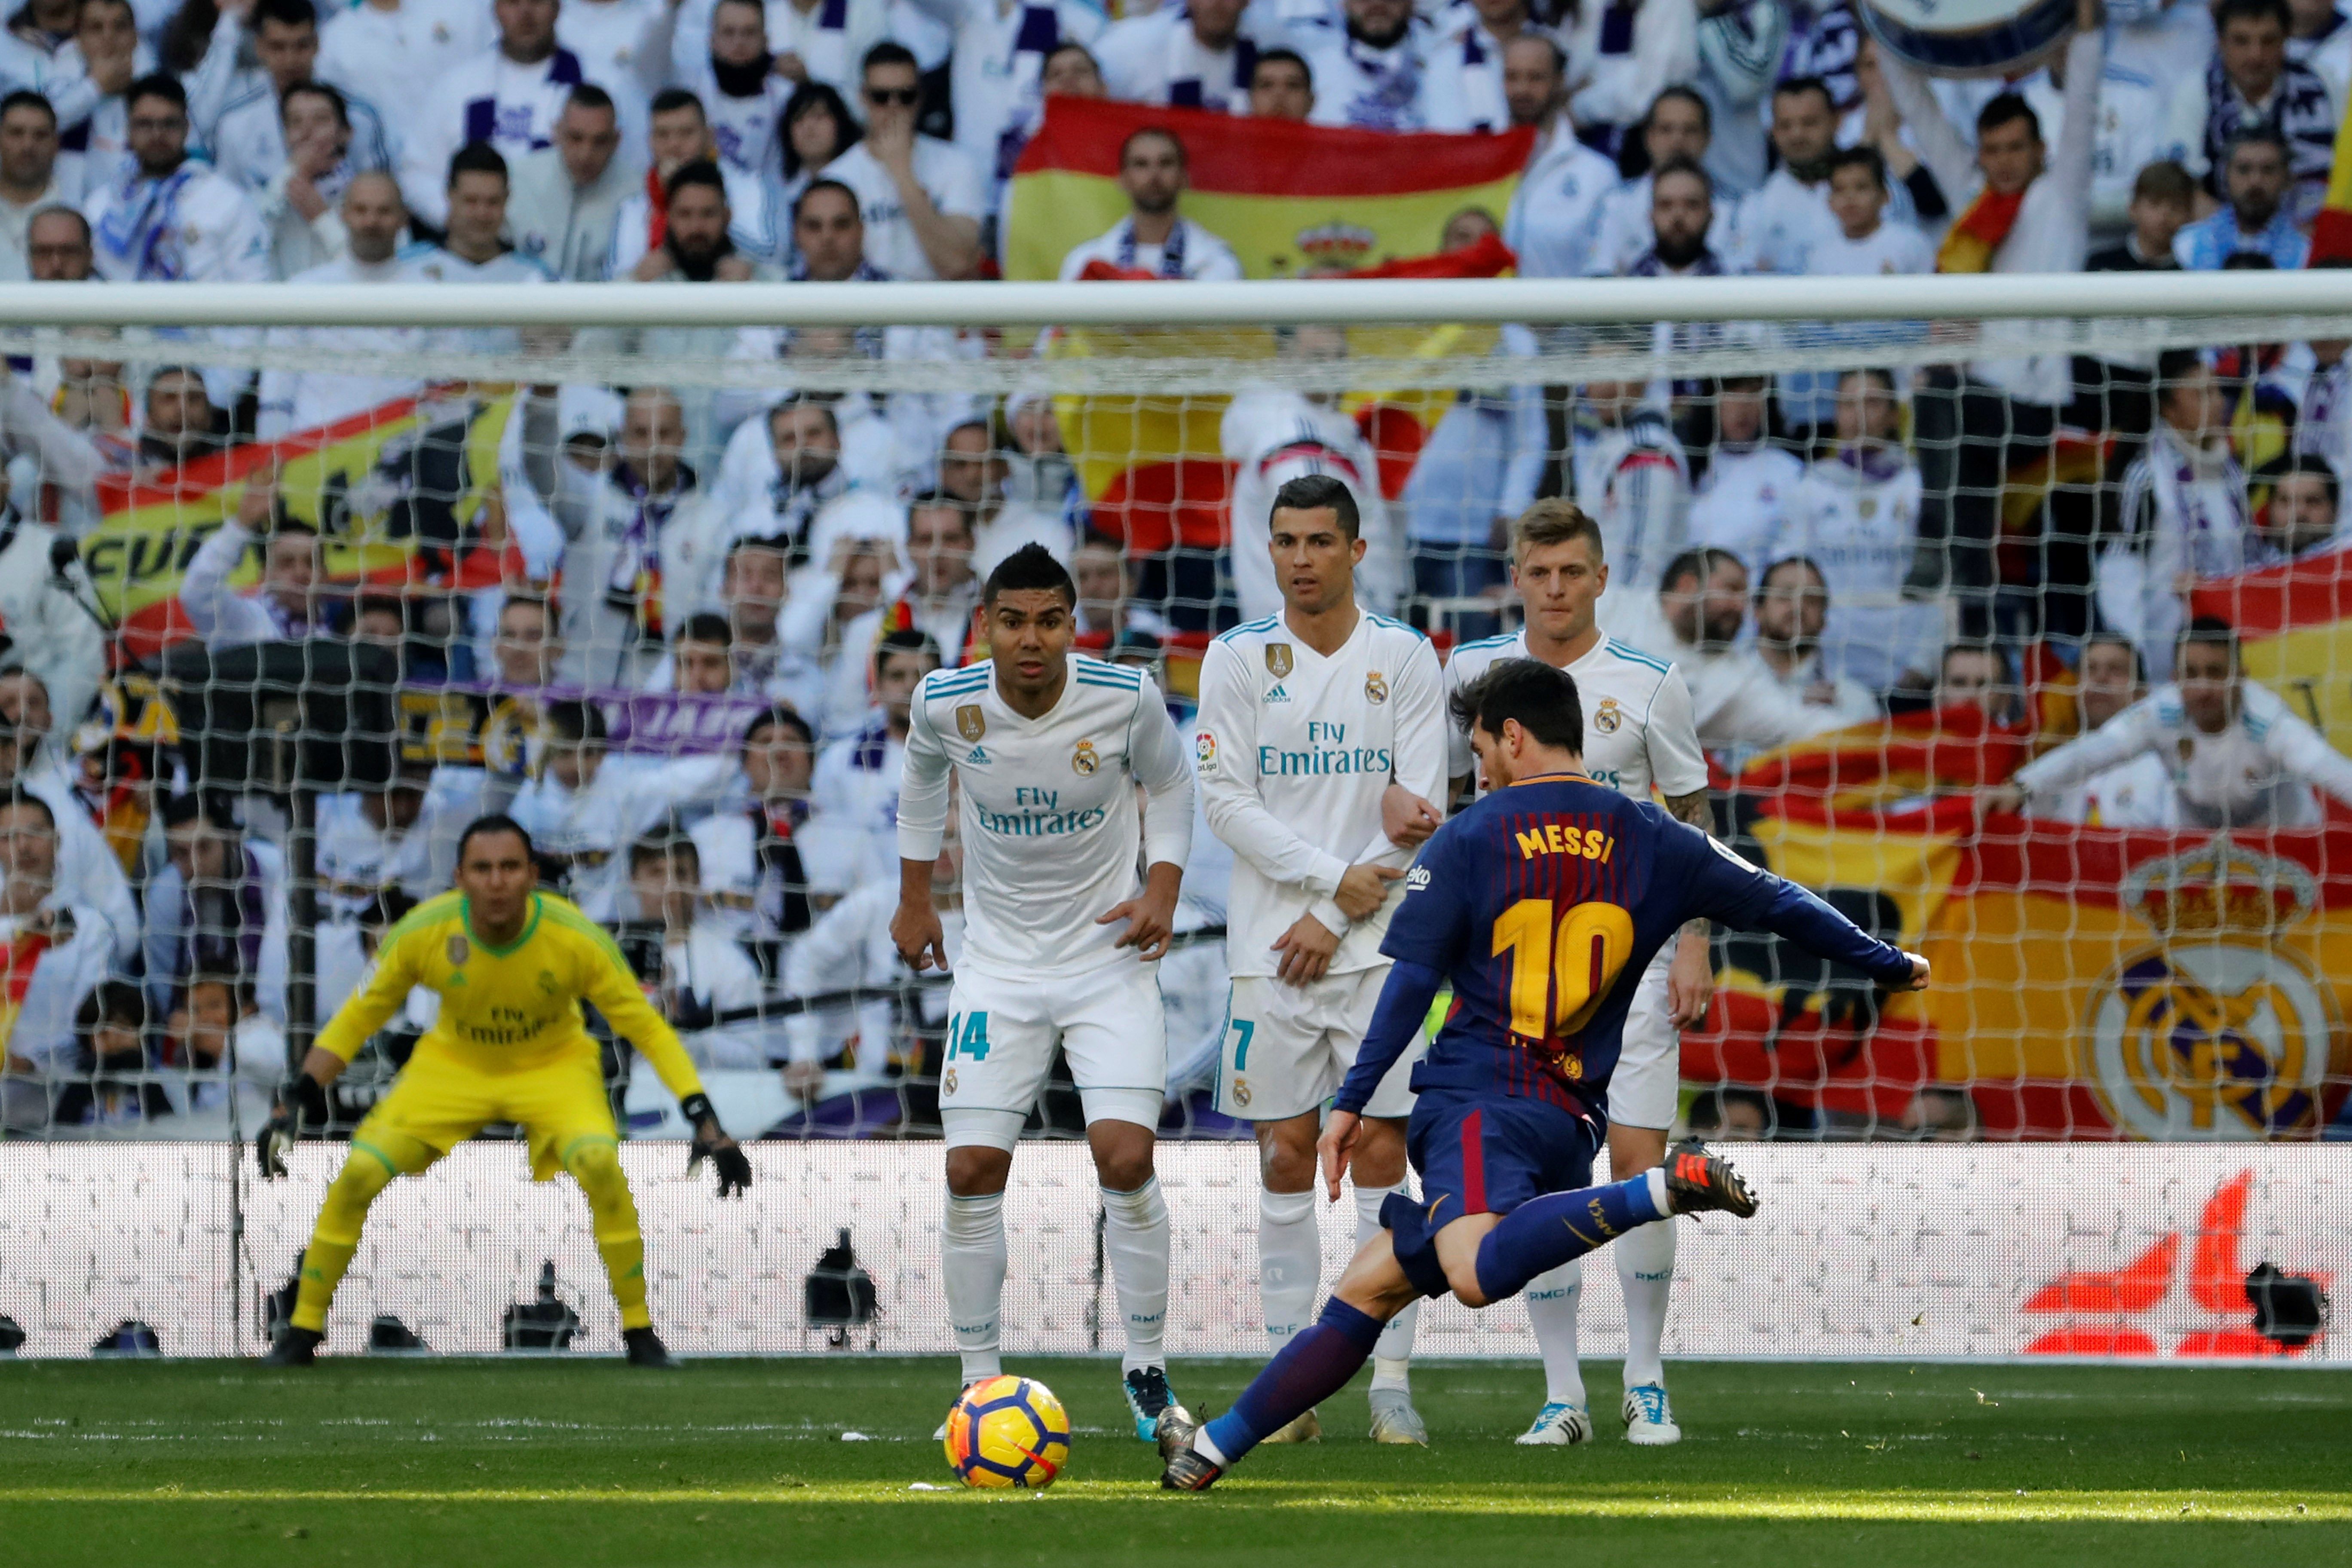 El Madrid va fer una oferta de 250 milions per Messi, segons 'Spiegel'